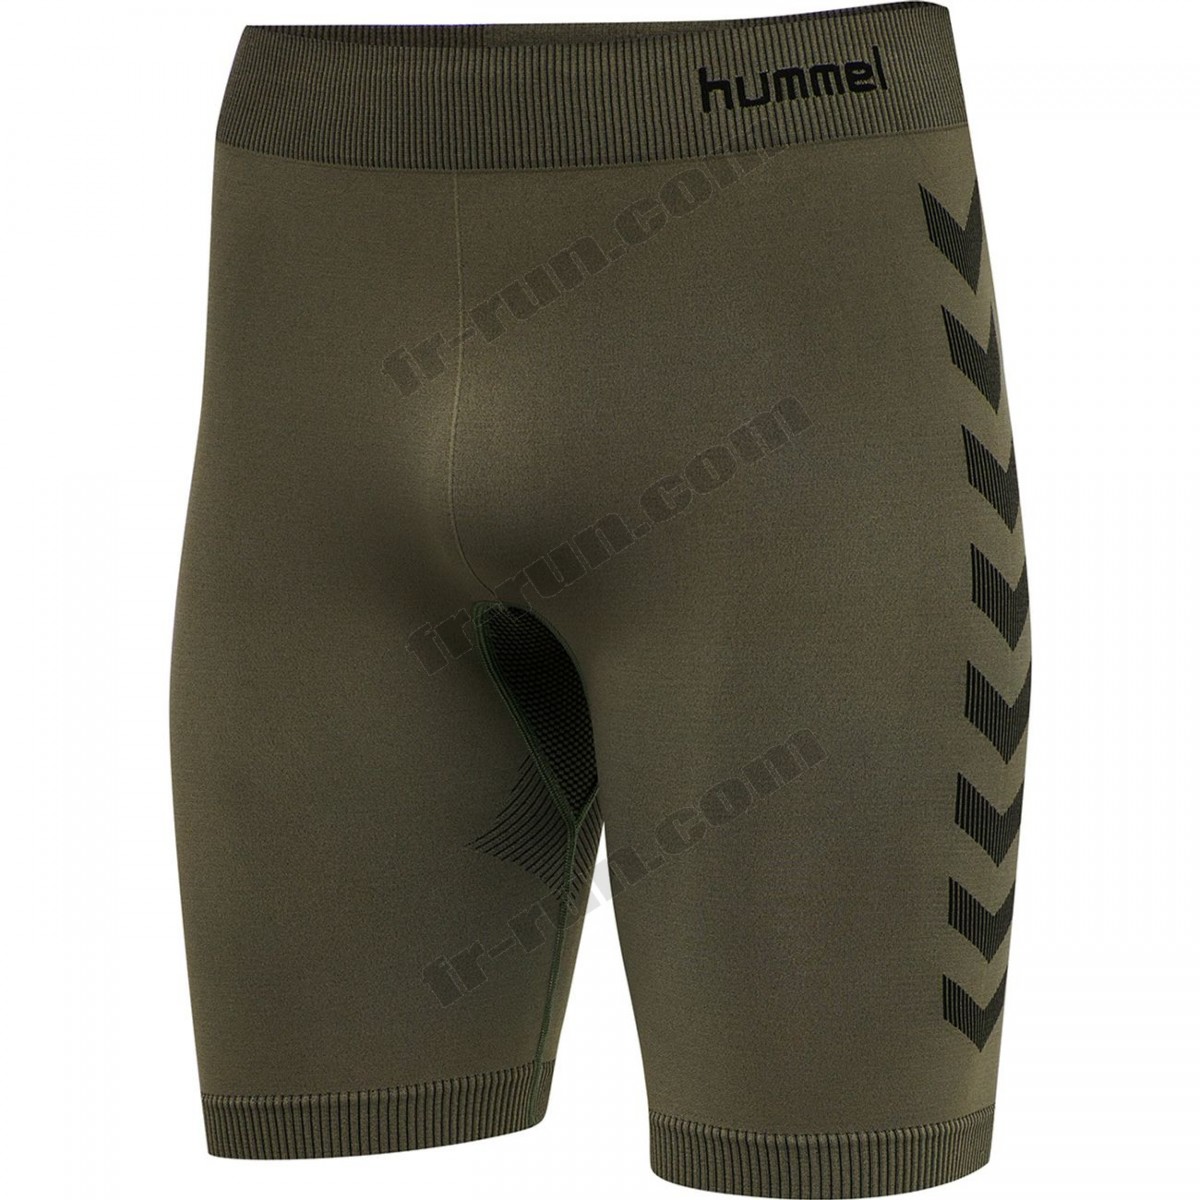 Hummel/Fitness homme HUMMEL Short de compression Hummel hmlfirst training √ Nouveau style √ Soldes - -0